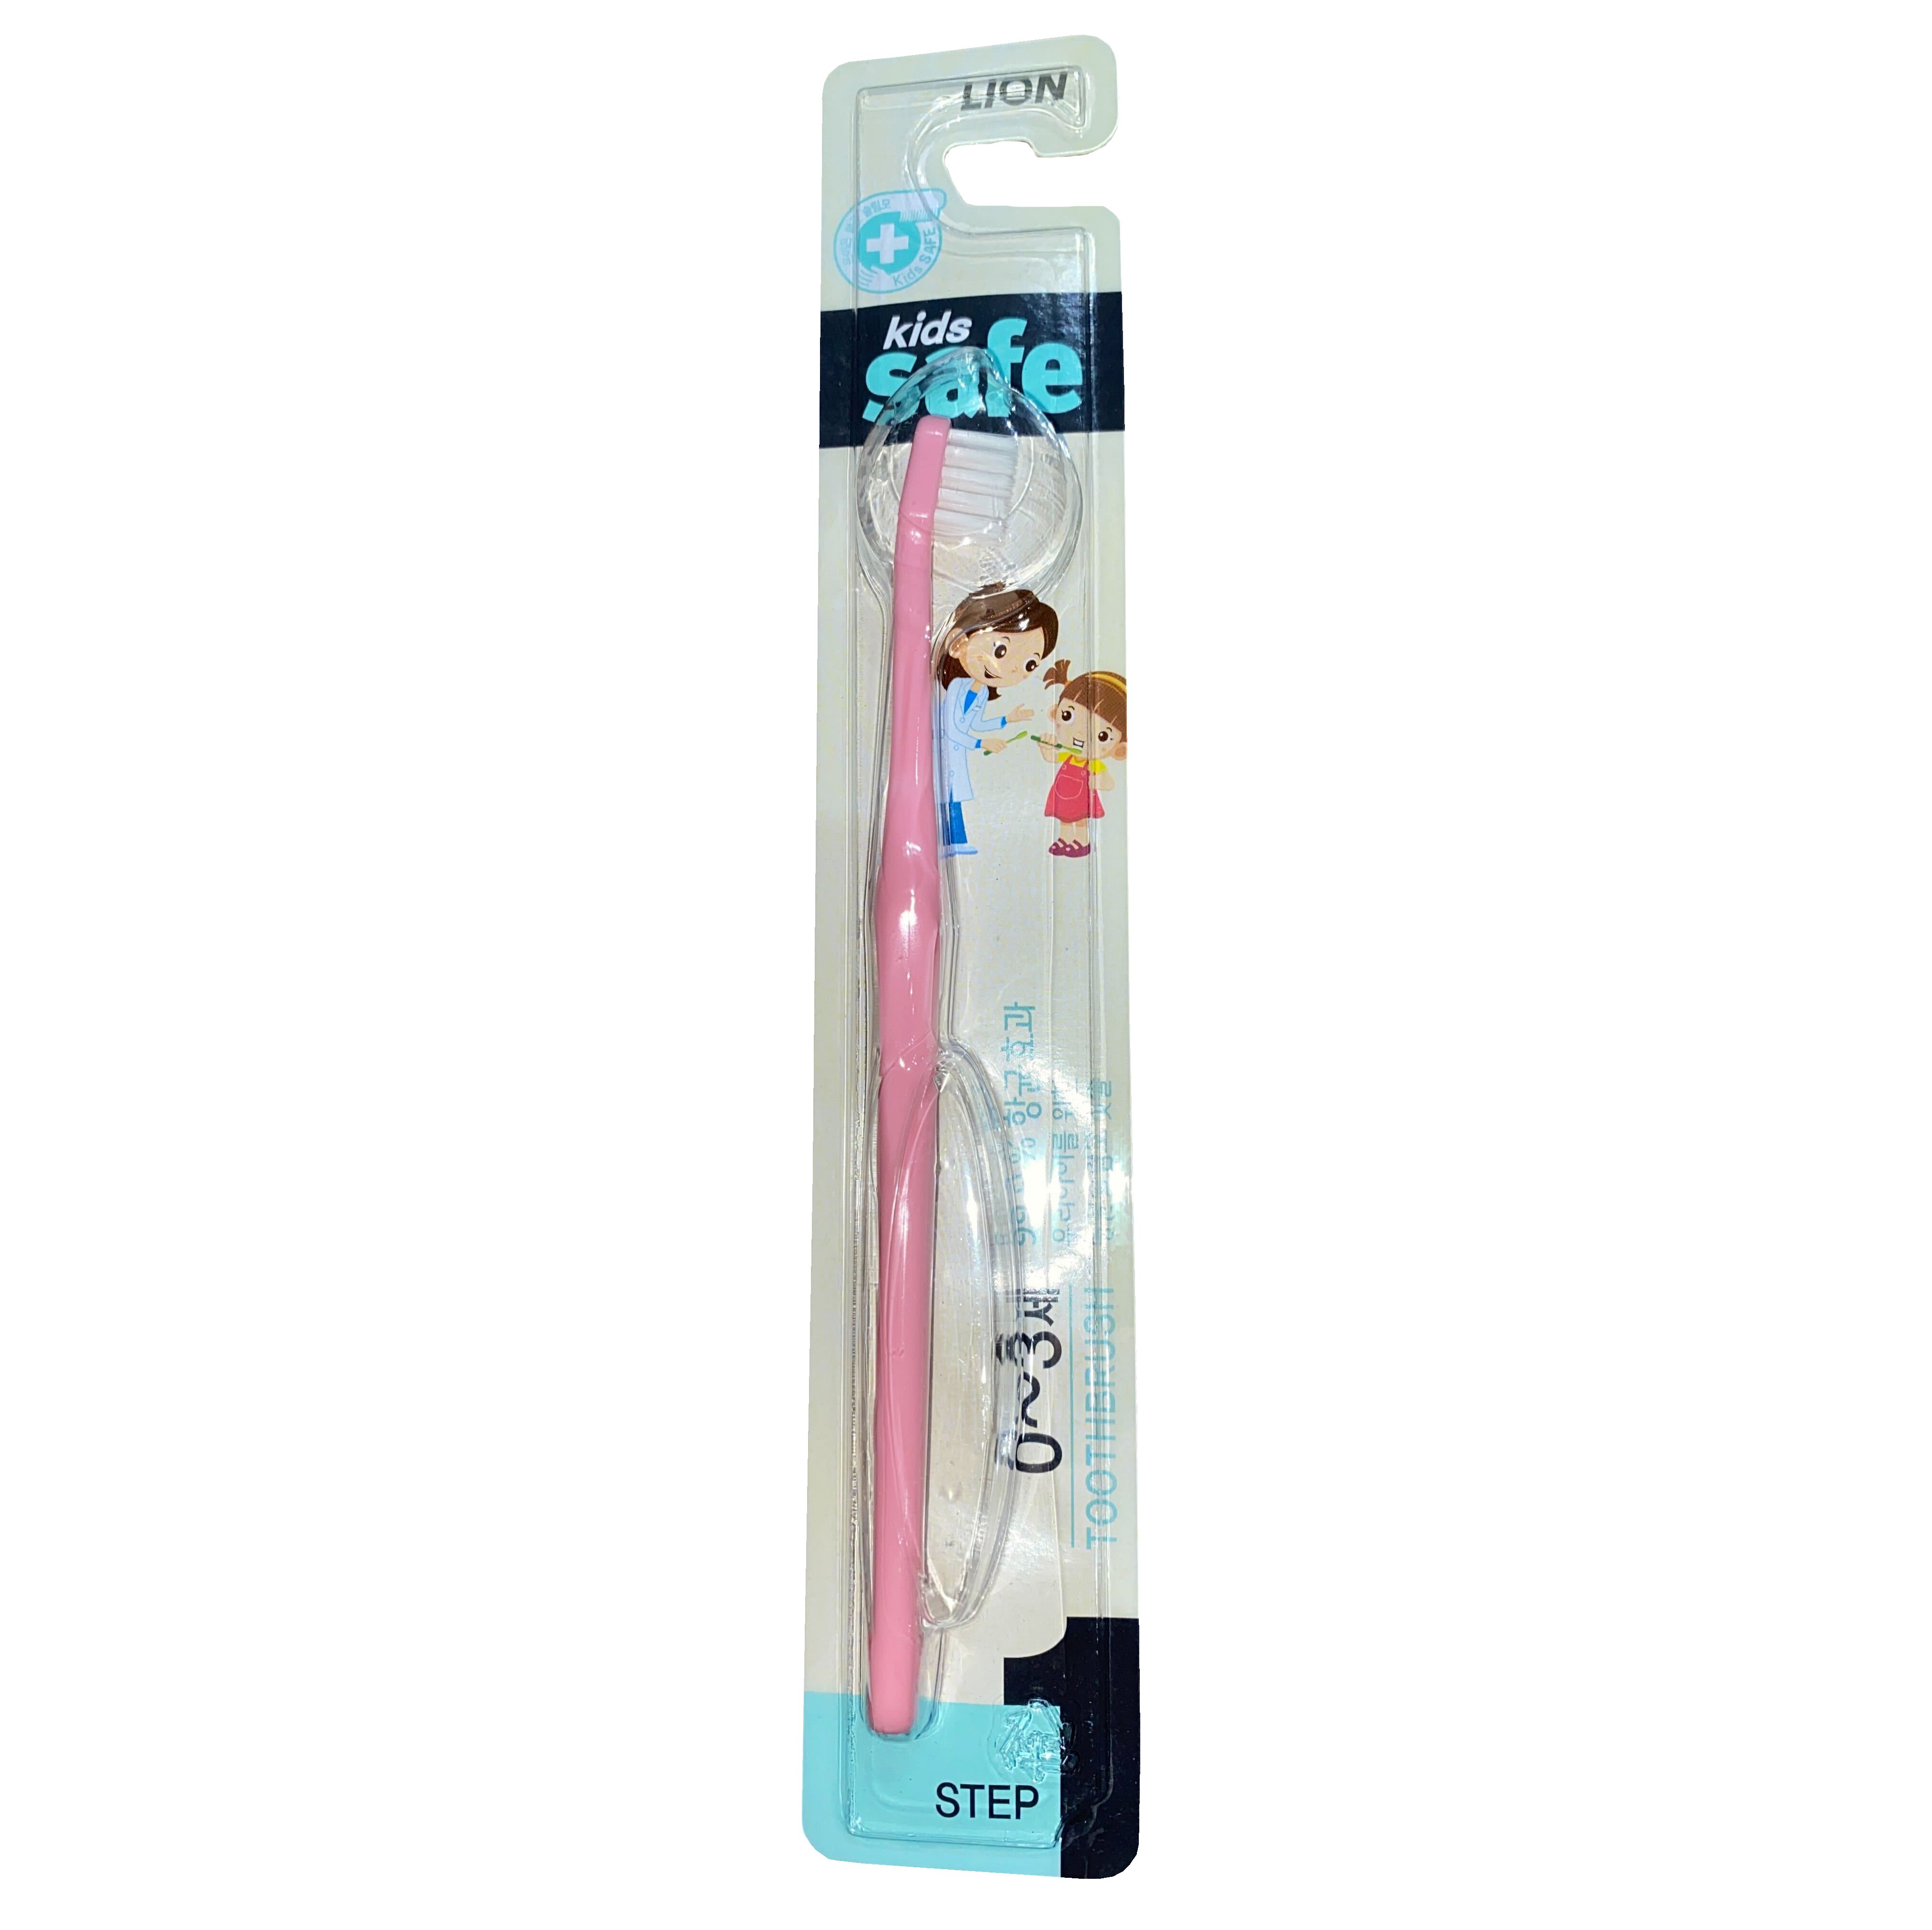 Детская зубная щетка Lion Kids Safe, 0-3 года, розовый, 1 шт. - фото 1